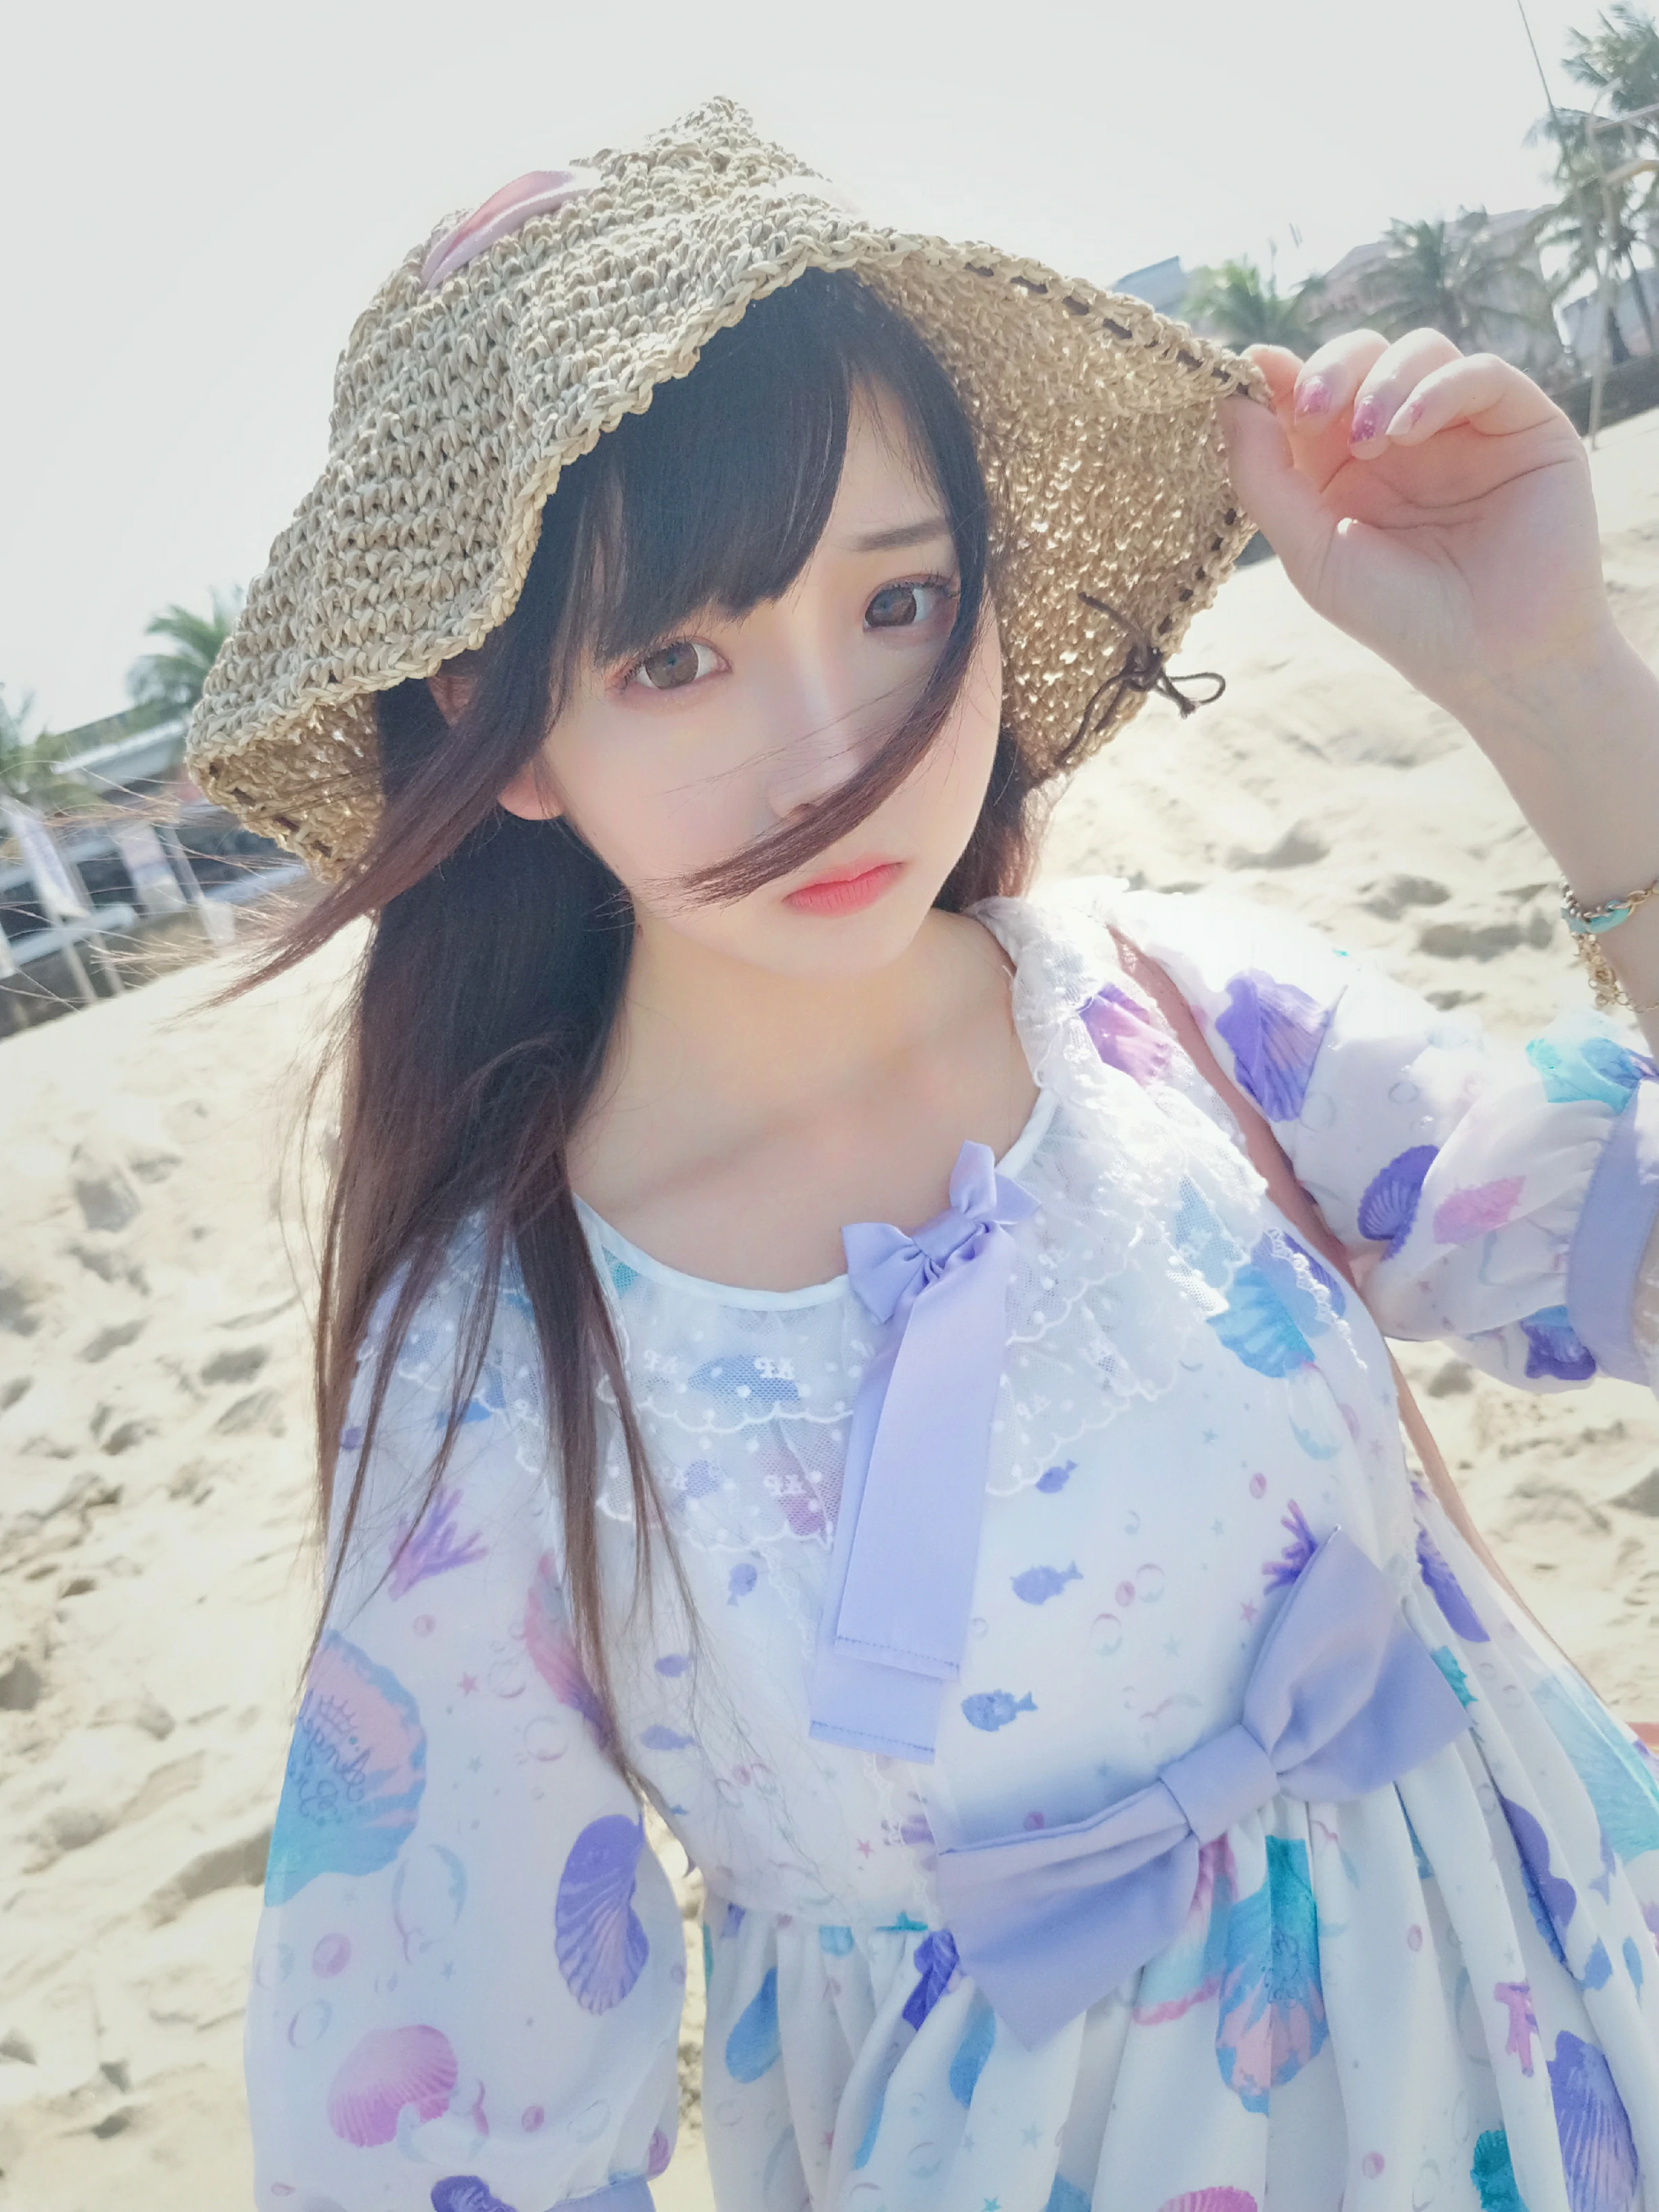 清纯少女 古川kagura 蓝色连身裙之沙滩写真,_20190208_073641